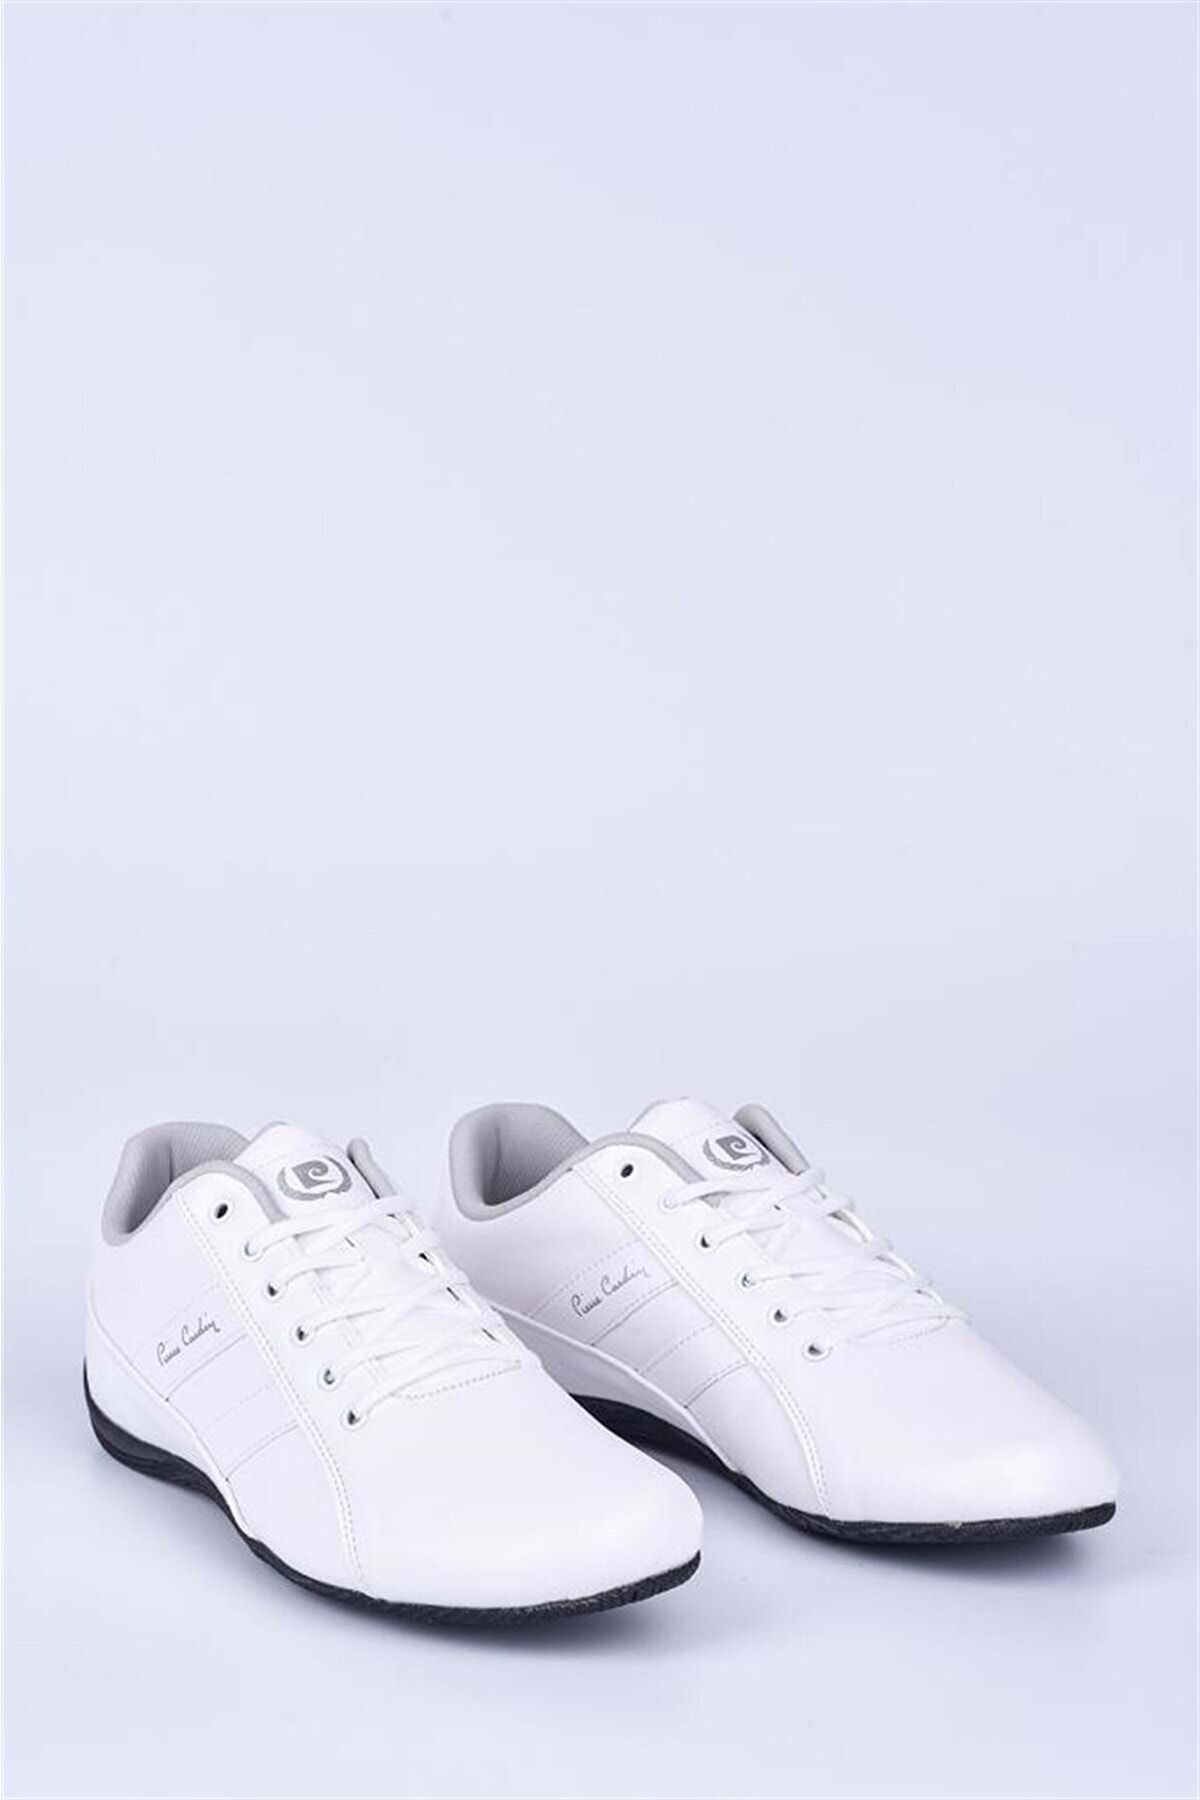 Pierre Cardin Pc-30490 Beyaz Erkek Spor Ayakkabı